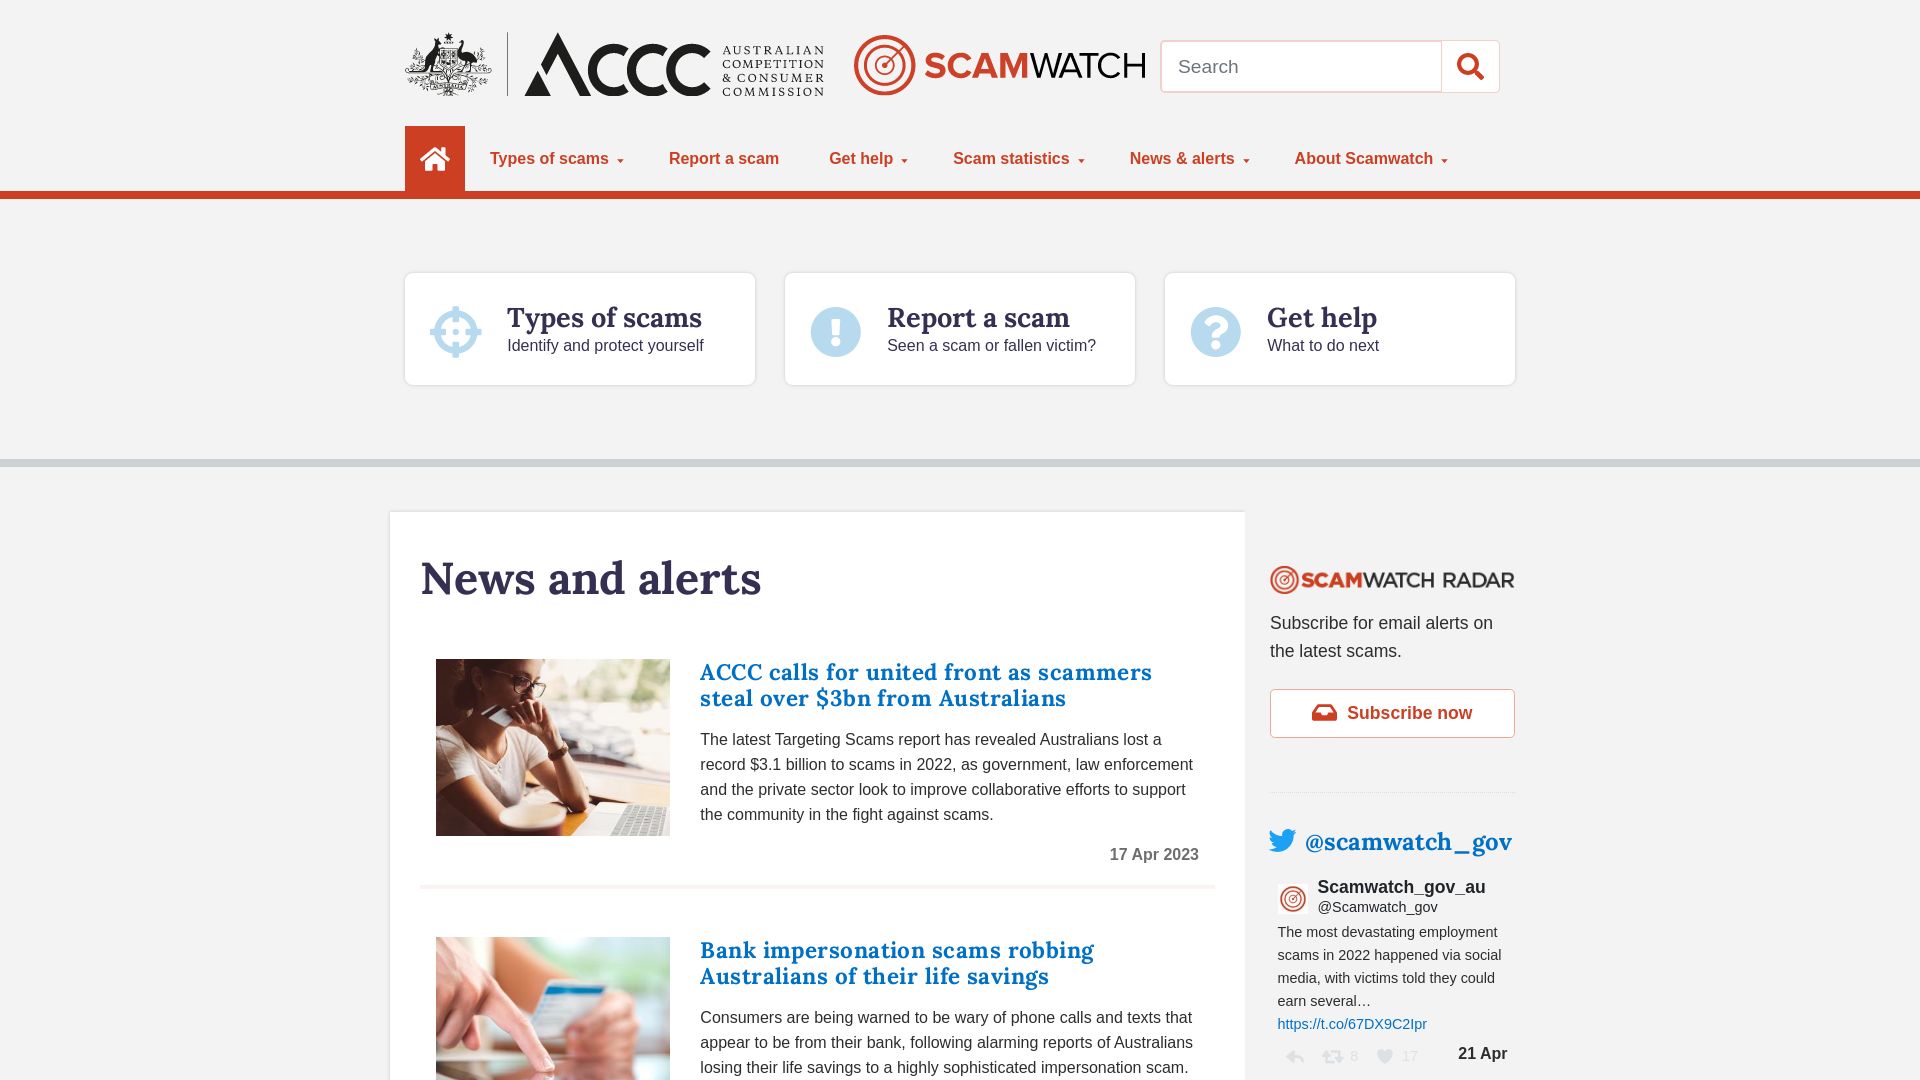 Website status scamwatch.gov.au is   ONLINE